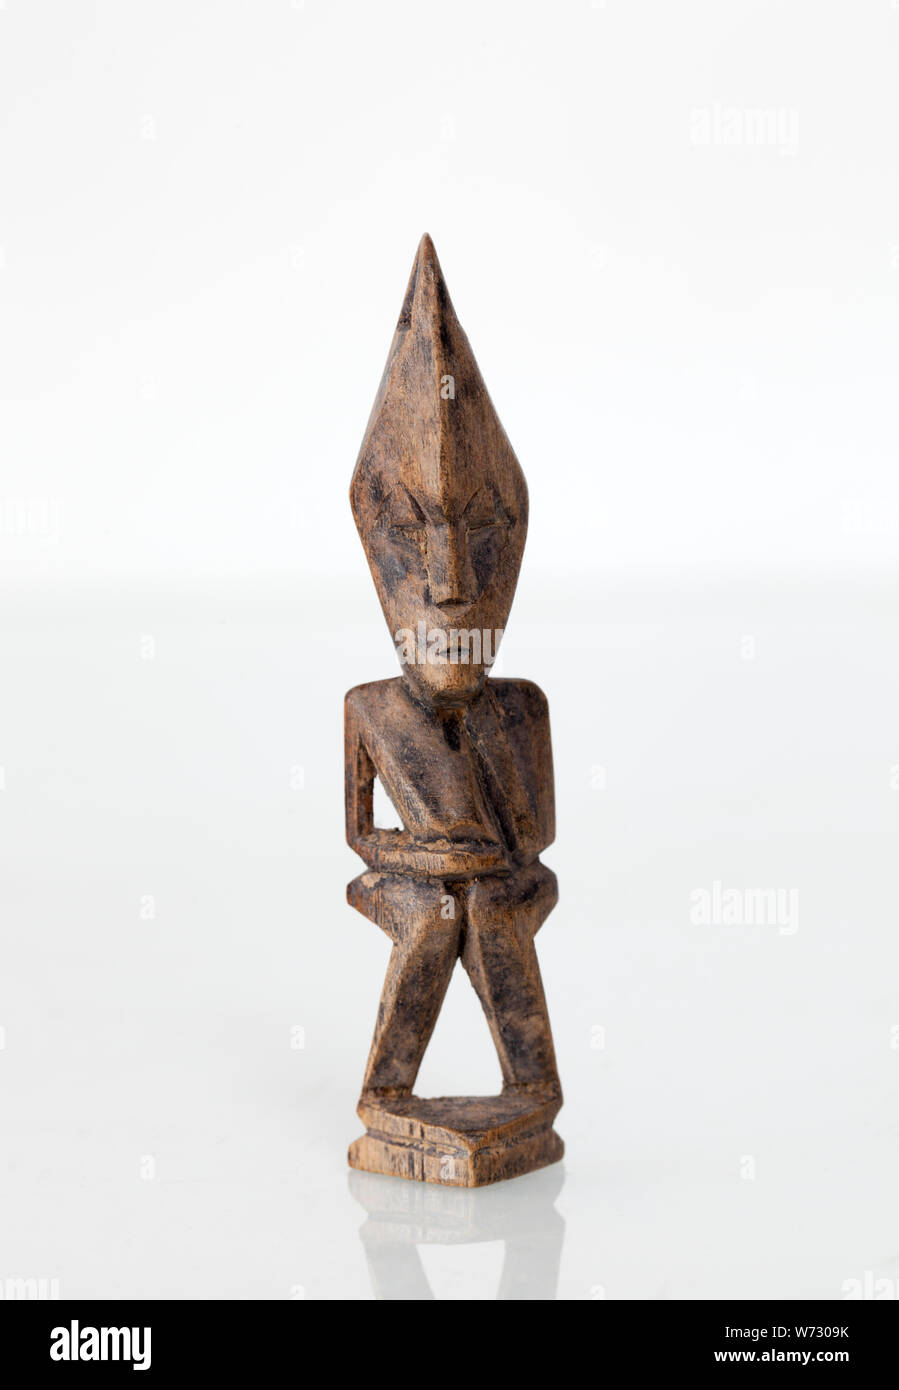 Vintage Indonesio de madera talladas a mano colgante decorativo - un ejemplo de arte figurativo desde Lombok Foto de stock